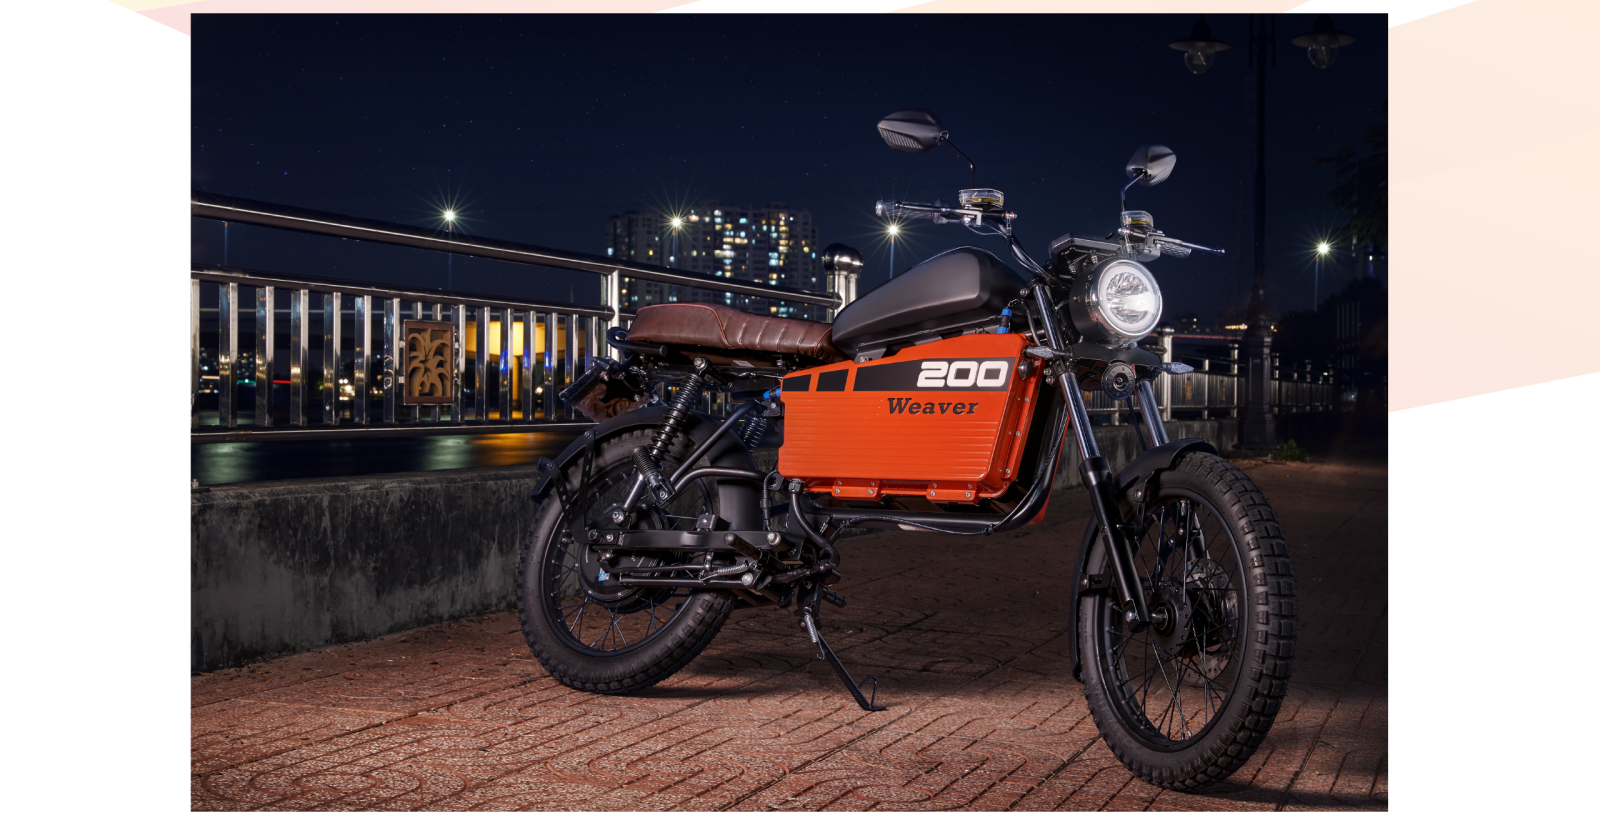 Dòng xe Weaver của Dat Bike được cơ quan chức năng công nhận là sản phẩm xe điện “Made in Vietnam” đầu tiên đạt công suất như xe xăng truyền thống